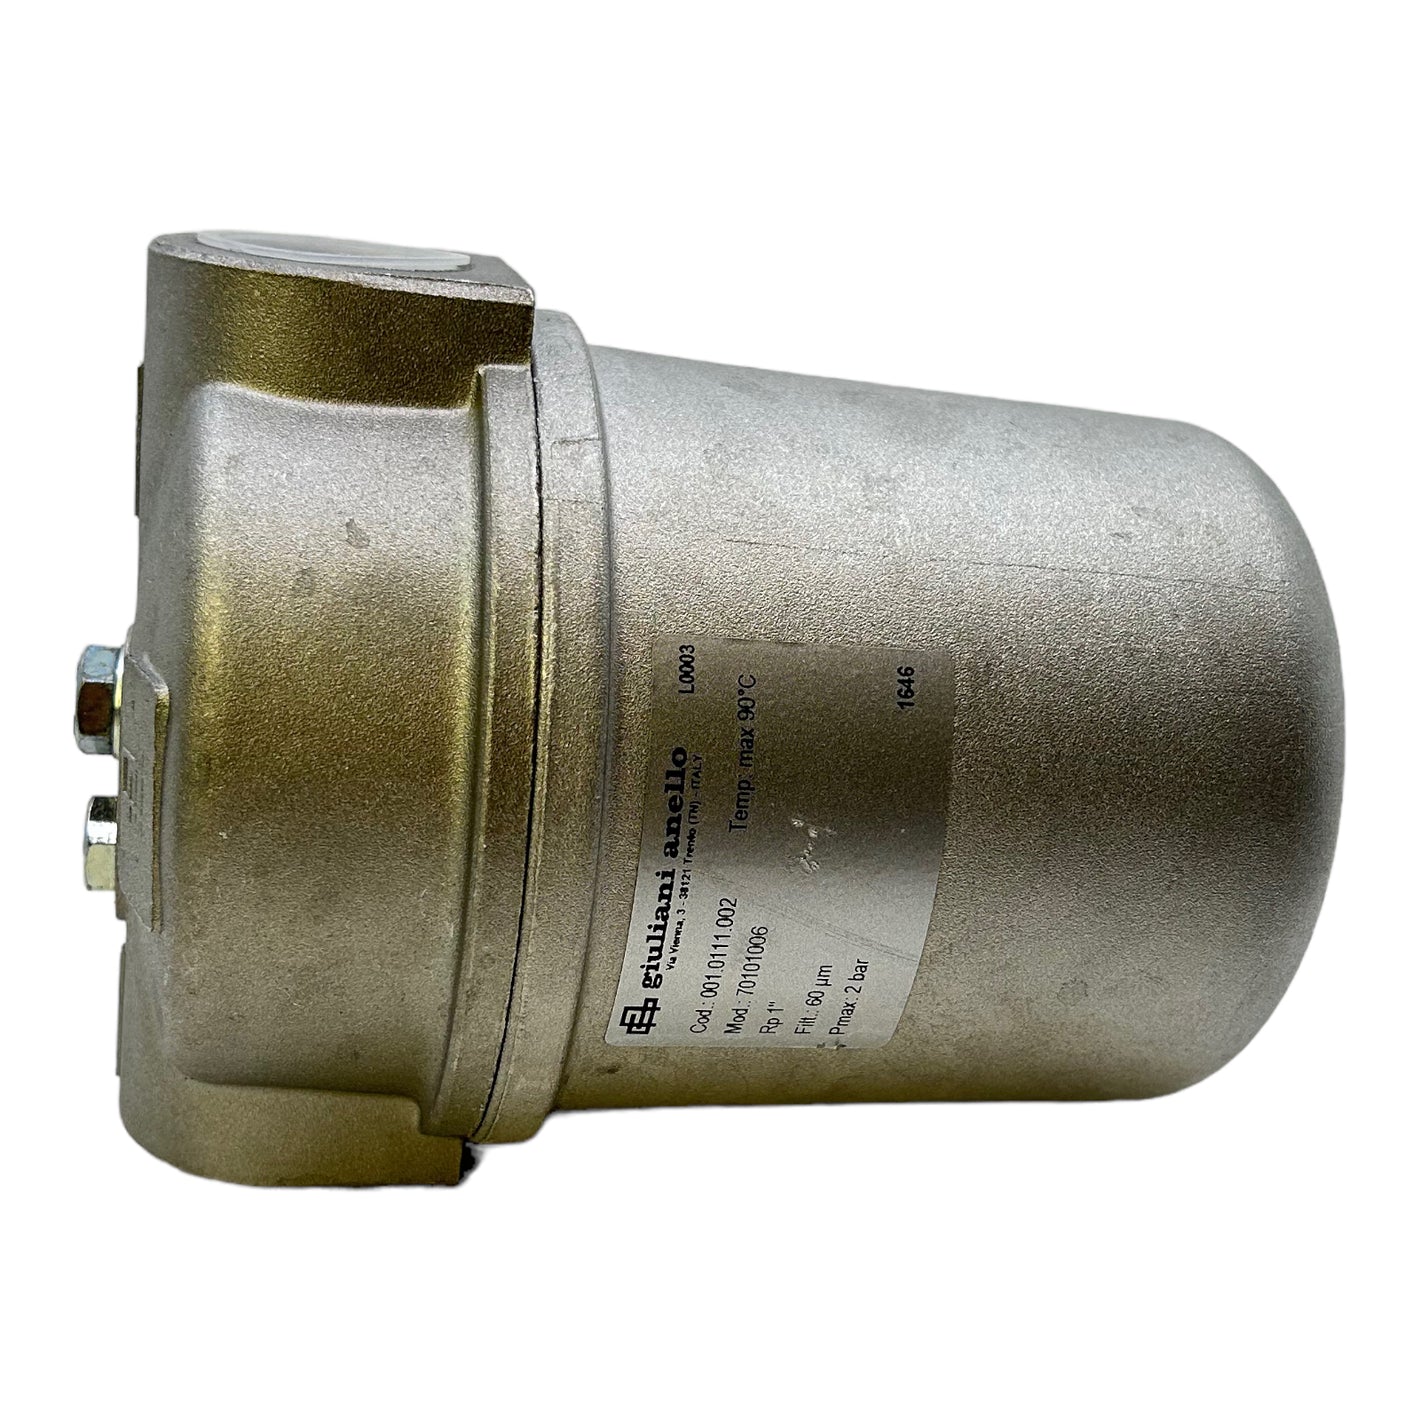 Giuliani Anello 70101006 gas filter Pmax=2bar Tmax=90°C gas filter 